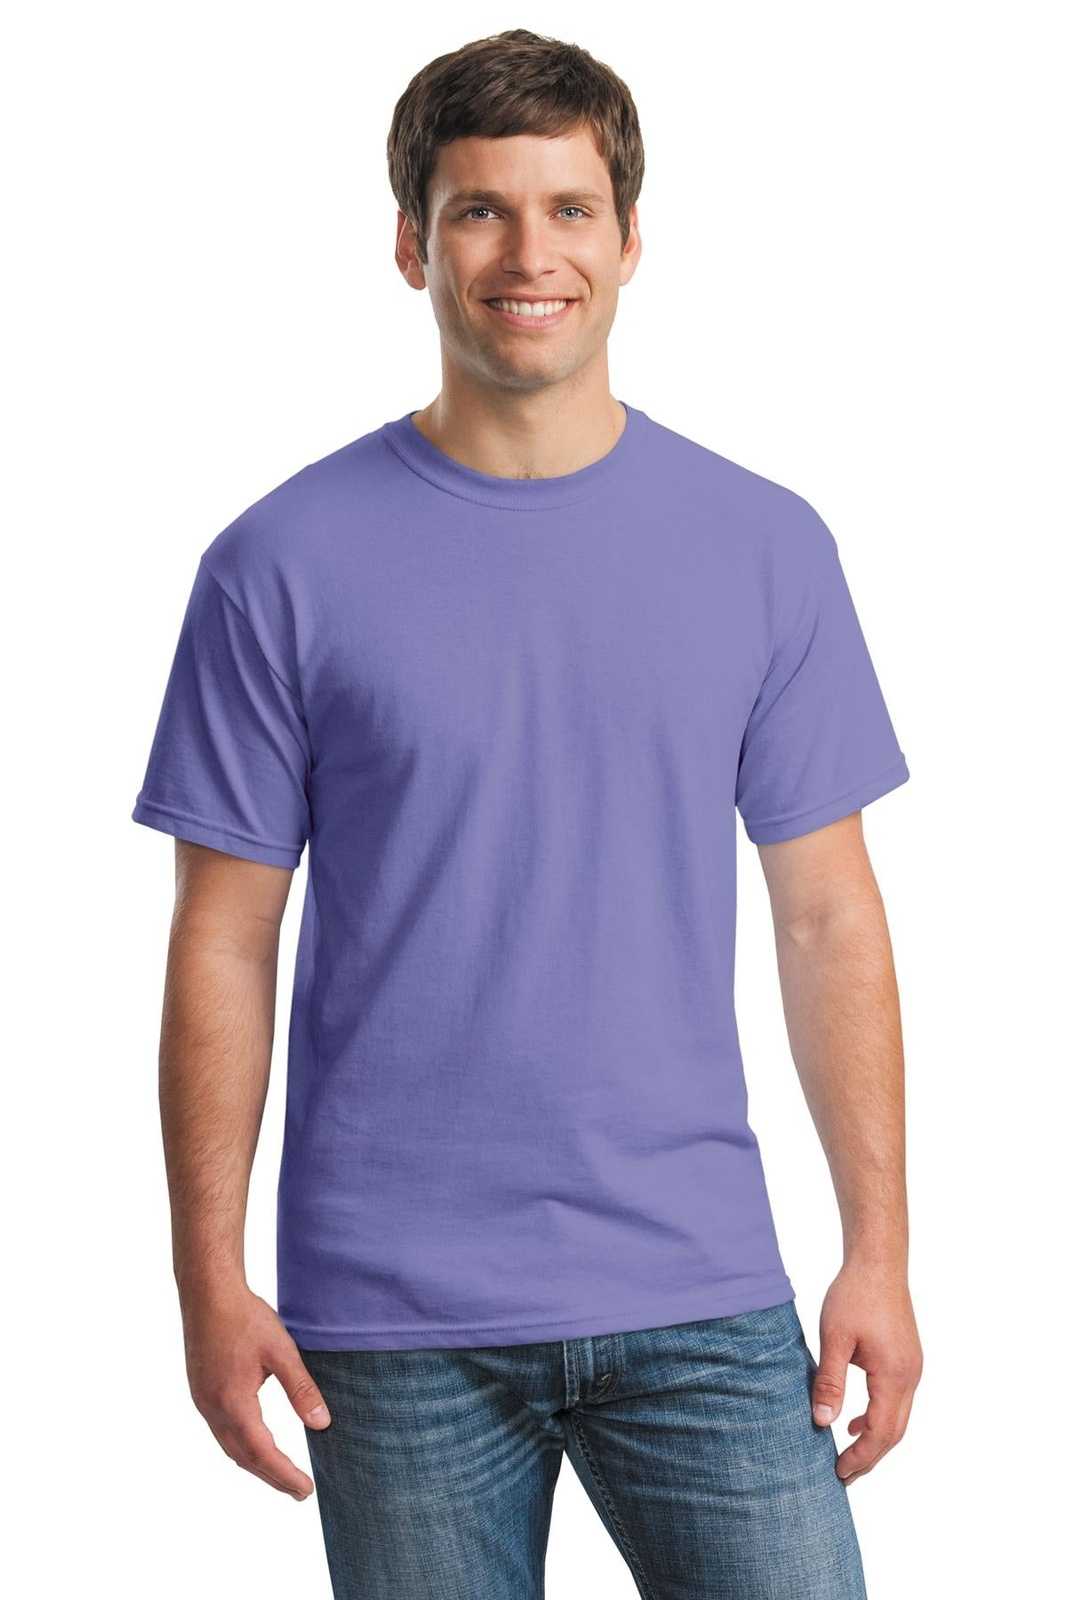 Gildan 5000 Heavy Cotton 100% Cotton T-Shirt - Violet